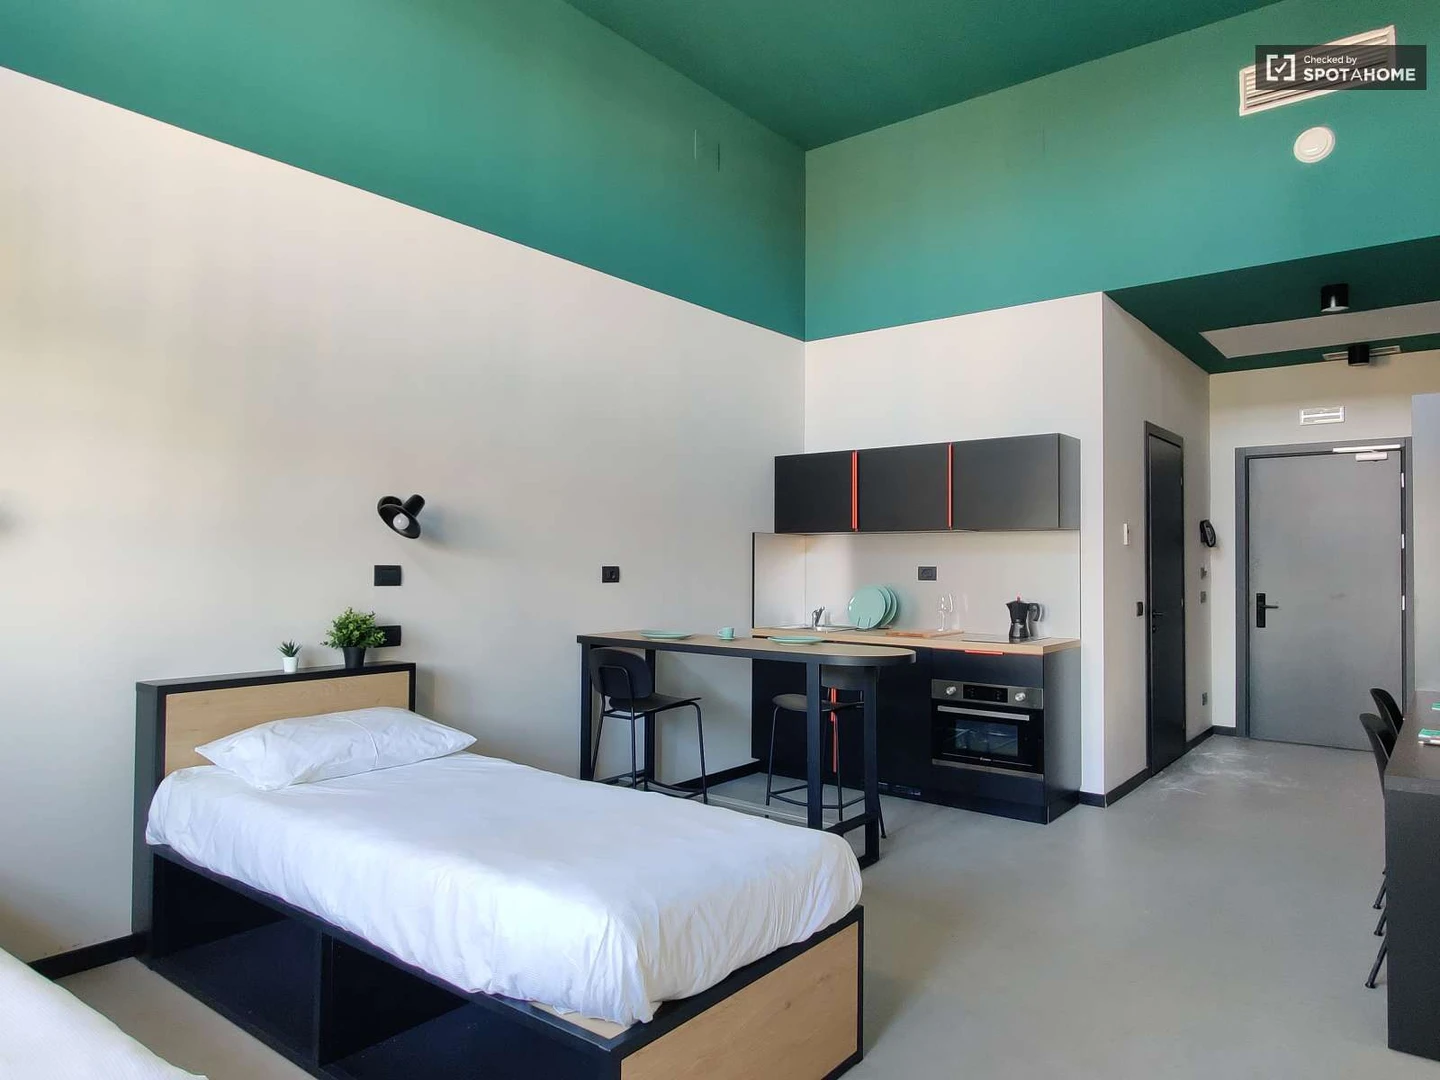 Alquiler de habitación en piso compartido en milano